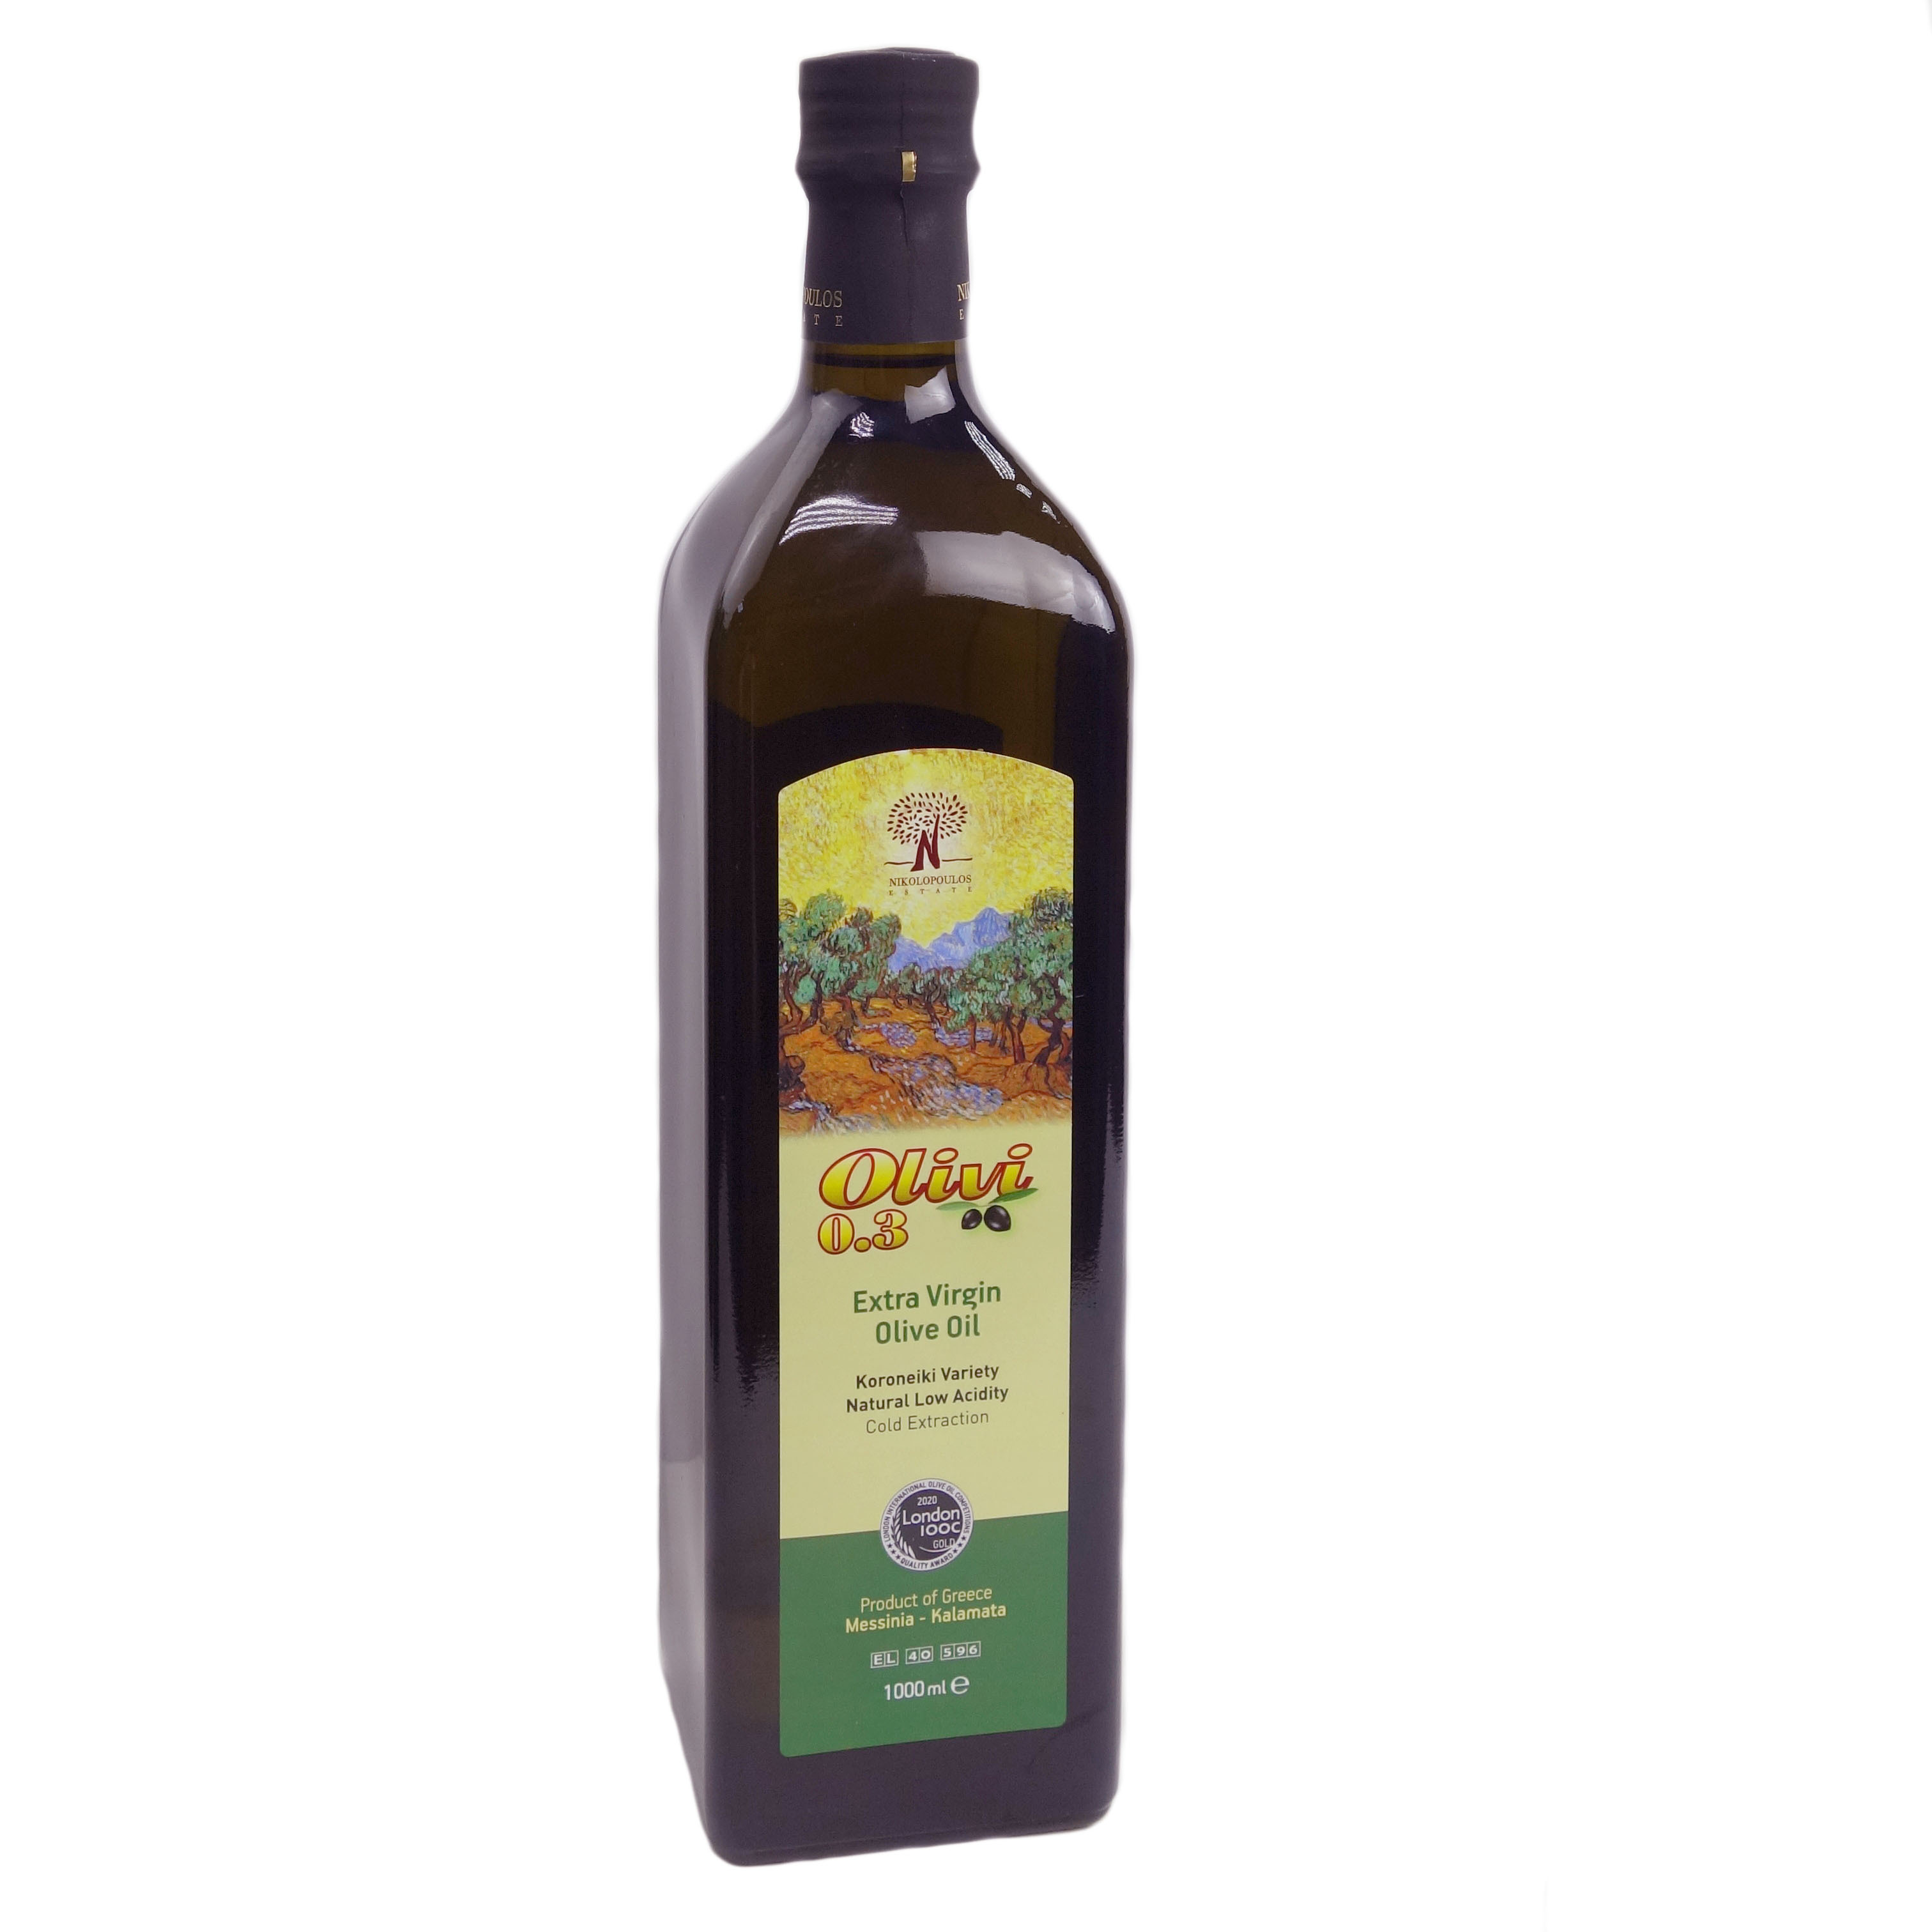 Оливковое масло Olivi 0.3 фермерское extra virgin, 1 л